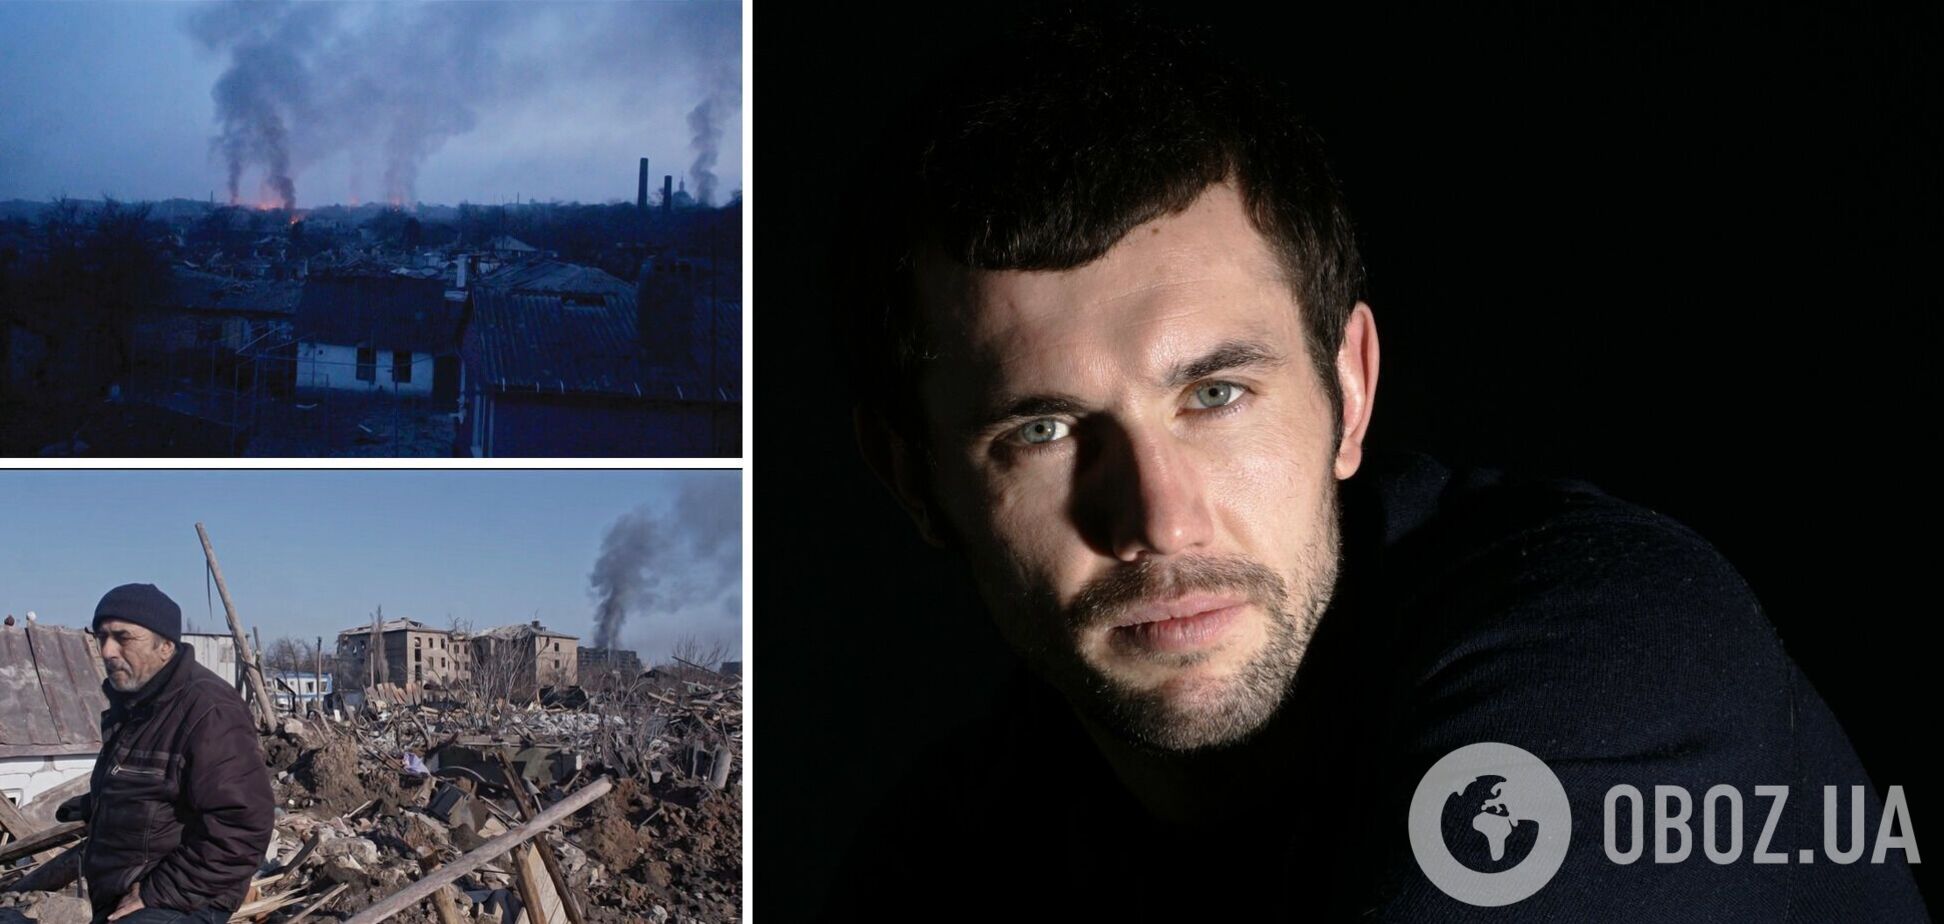 Поїхав таємно: колега закатованого росіянами режисера 'Маріуполіс 2' розповіла, як він потрапив у пекло війни